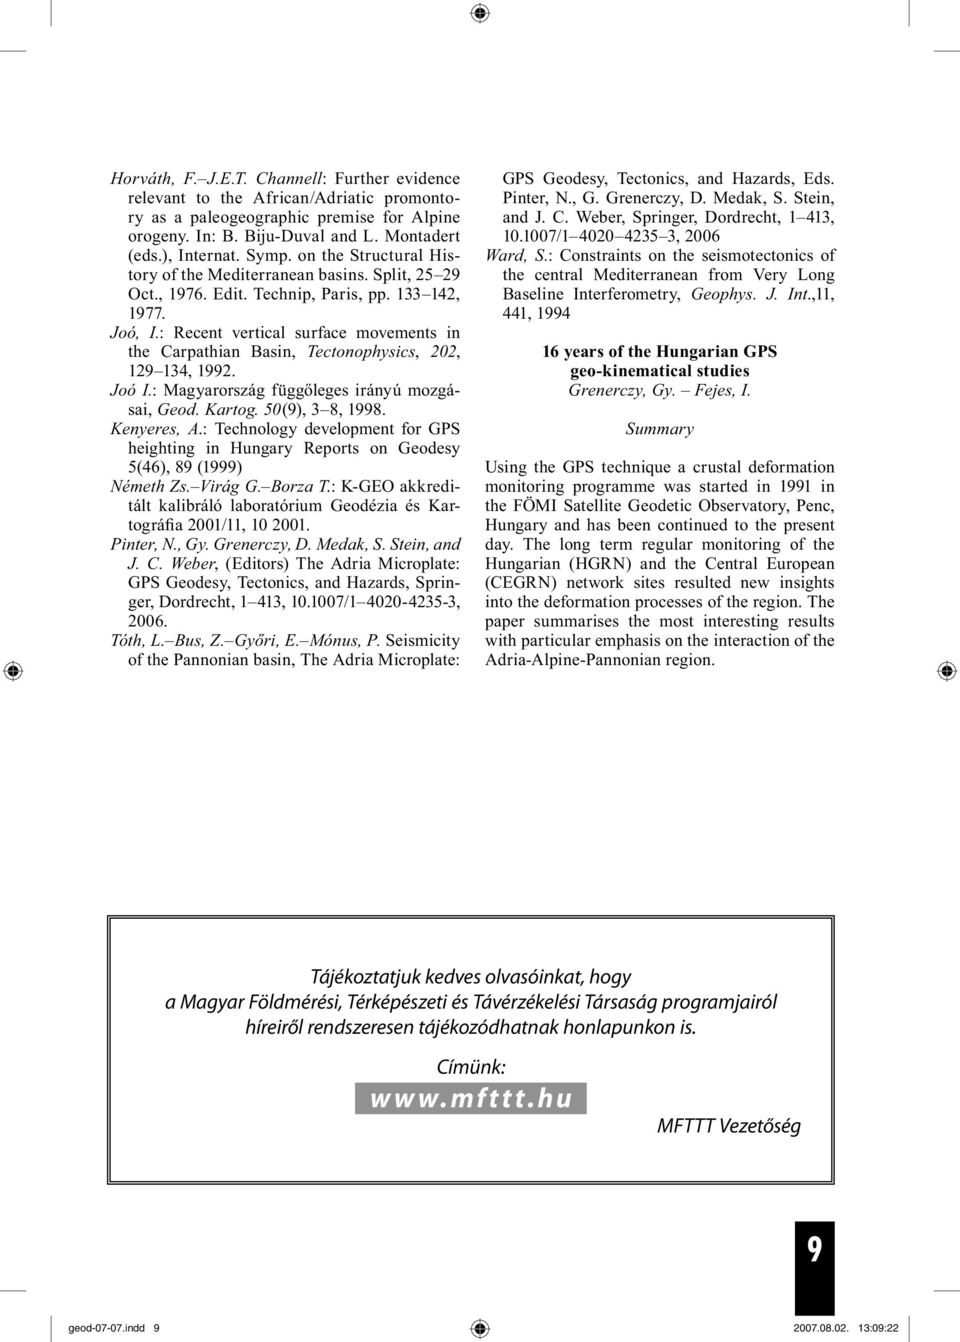 : Recent vertical surface movements in the Carpathian Basin, Tectonophysics, 202, 129 134, 1992. Joó I.: Magyarország függőleges irányú mozgásai, Geod. Kartog. 50(9), 3 8, 1998. Kenyeres, A.